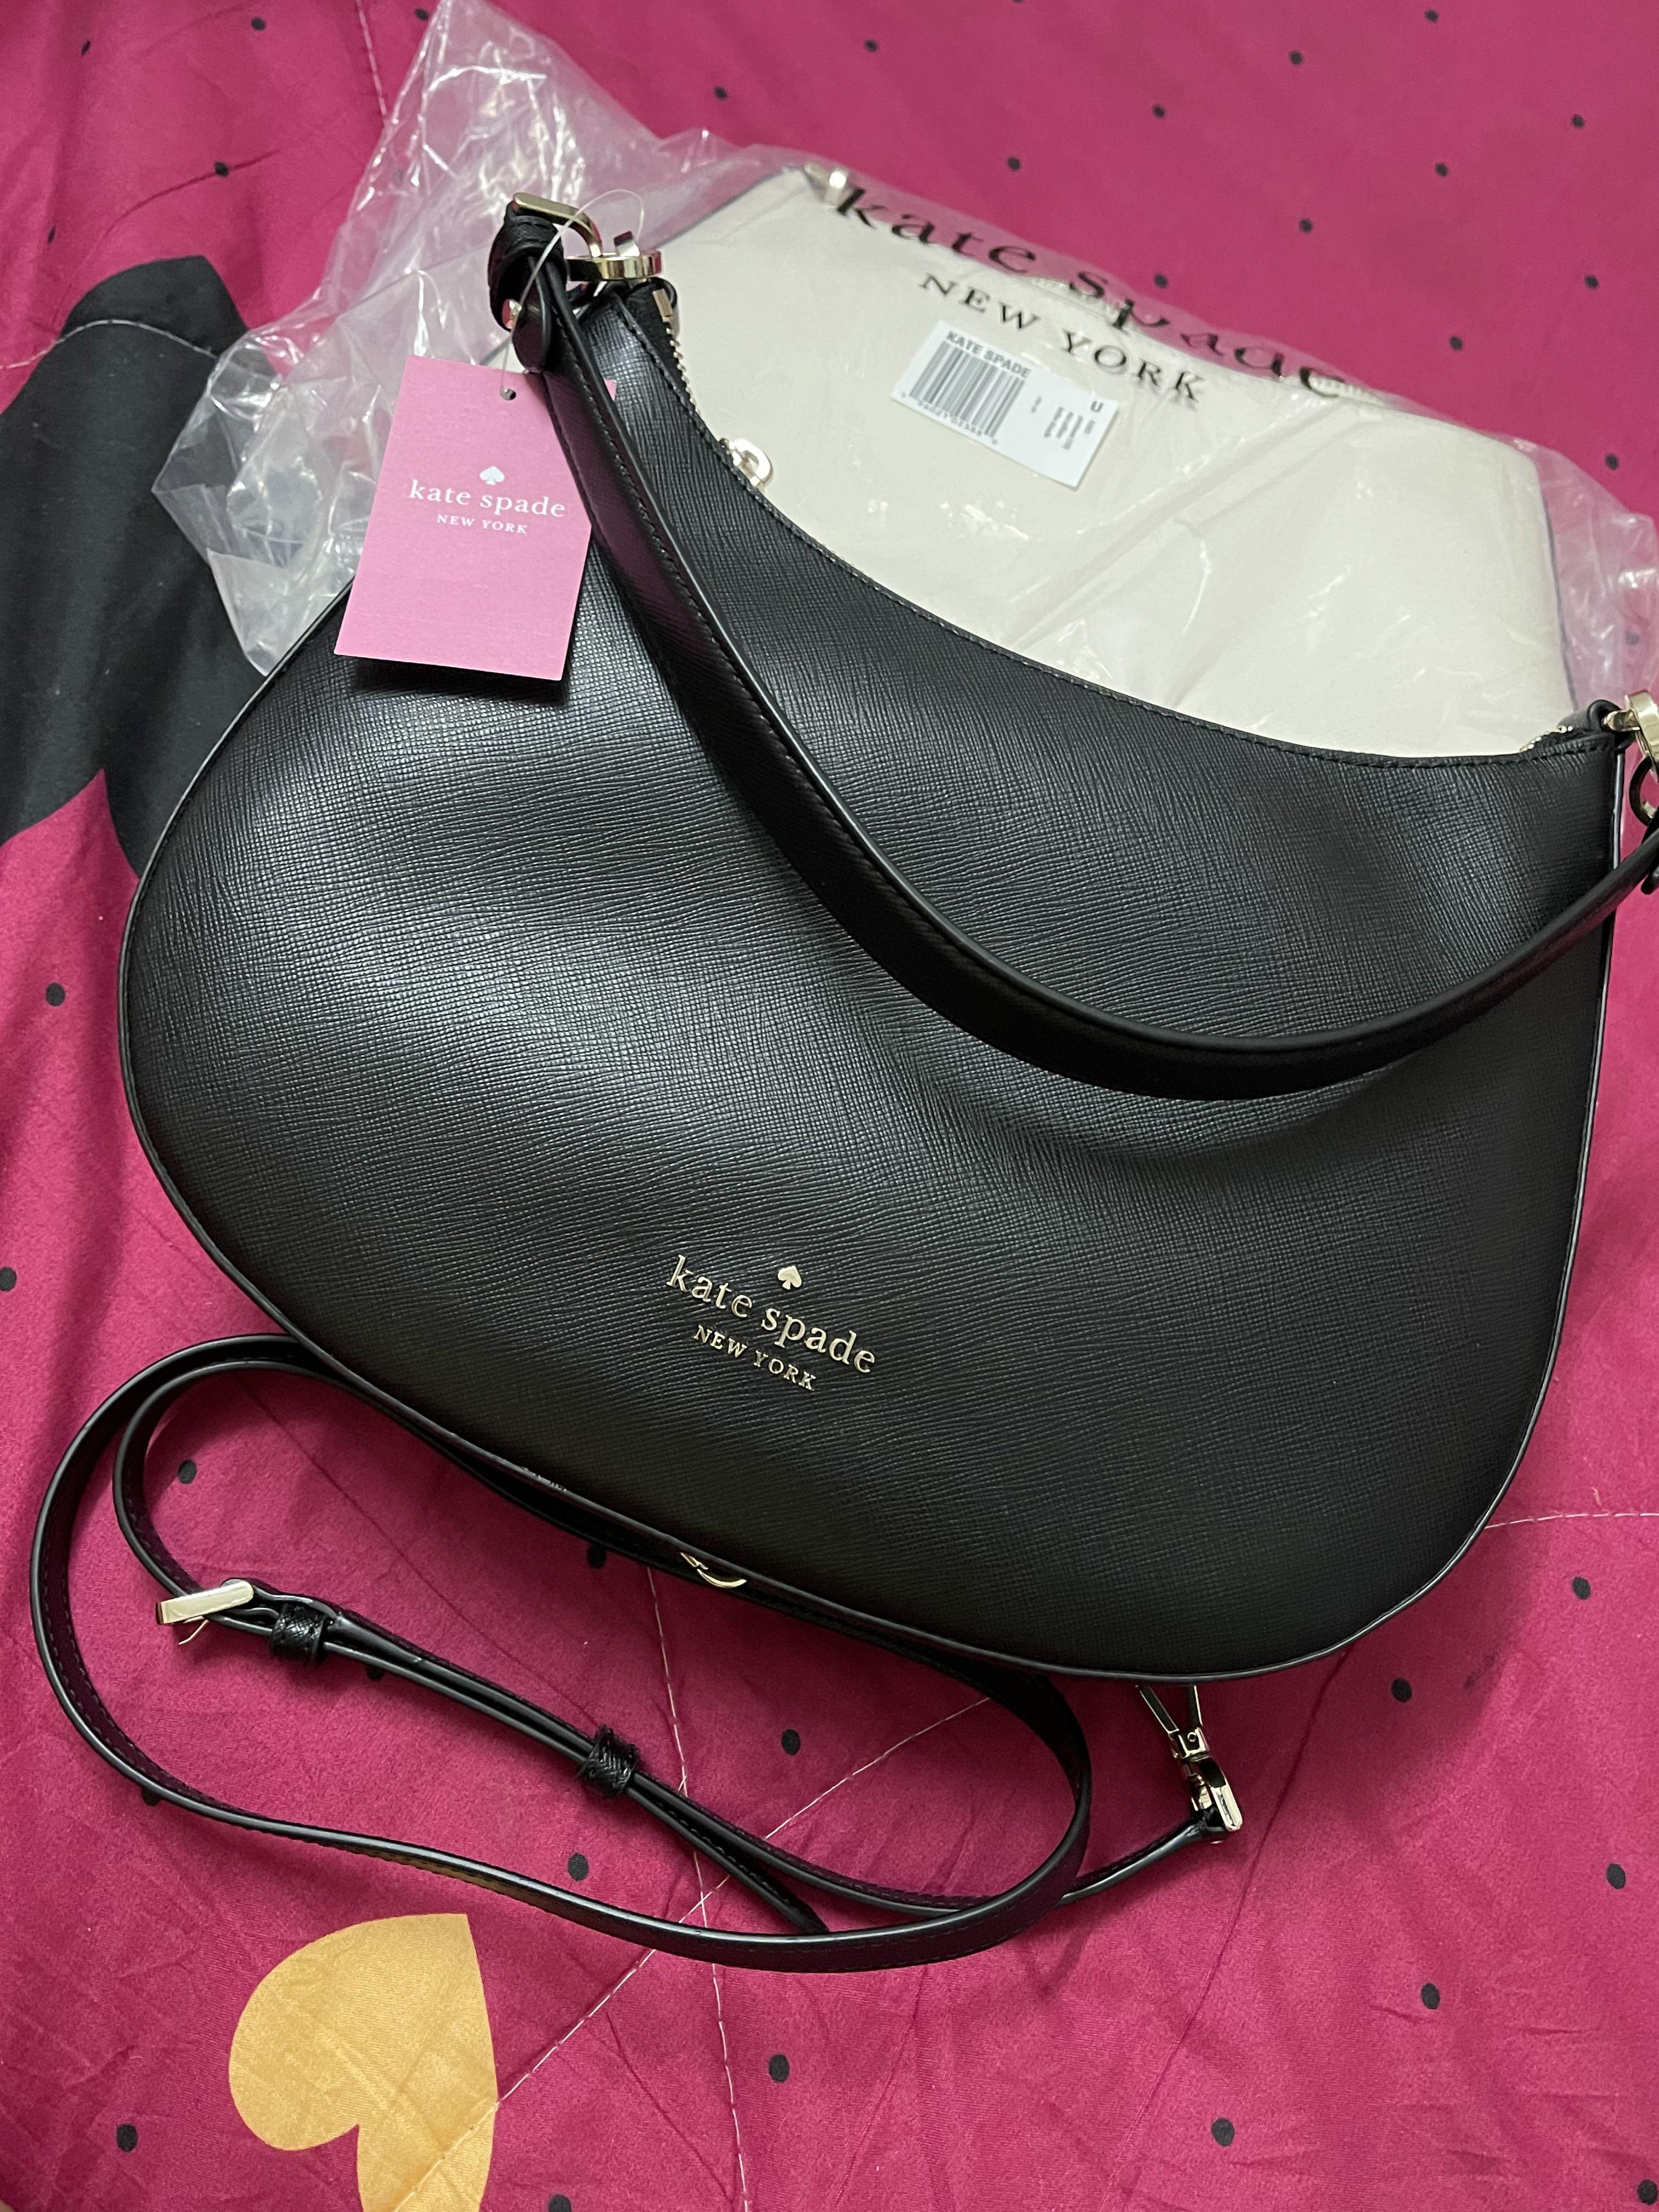 SpreeSuki - Kate Spade Crossbody Bag Shoulder Bag Staci Saffiano Leather  Shoulder Bag Black # K6042